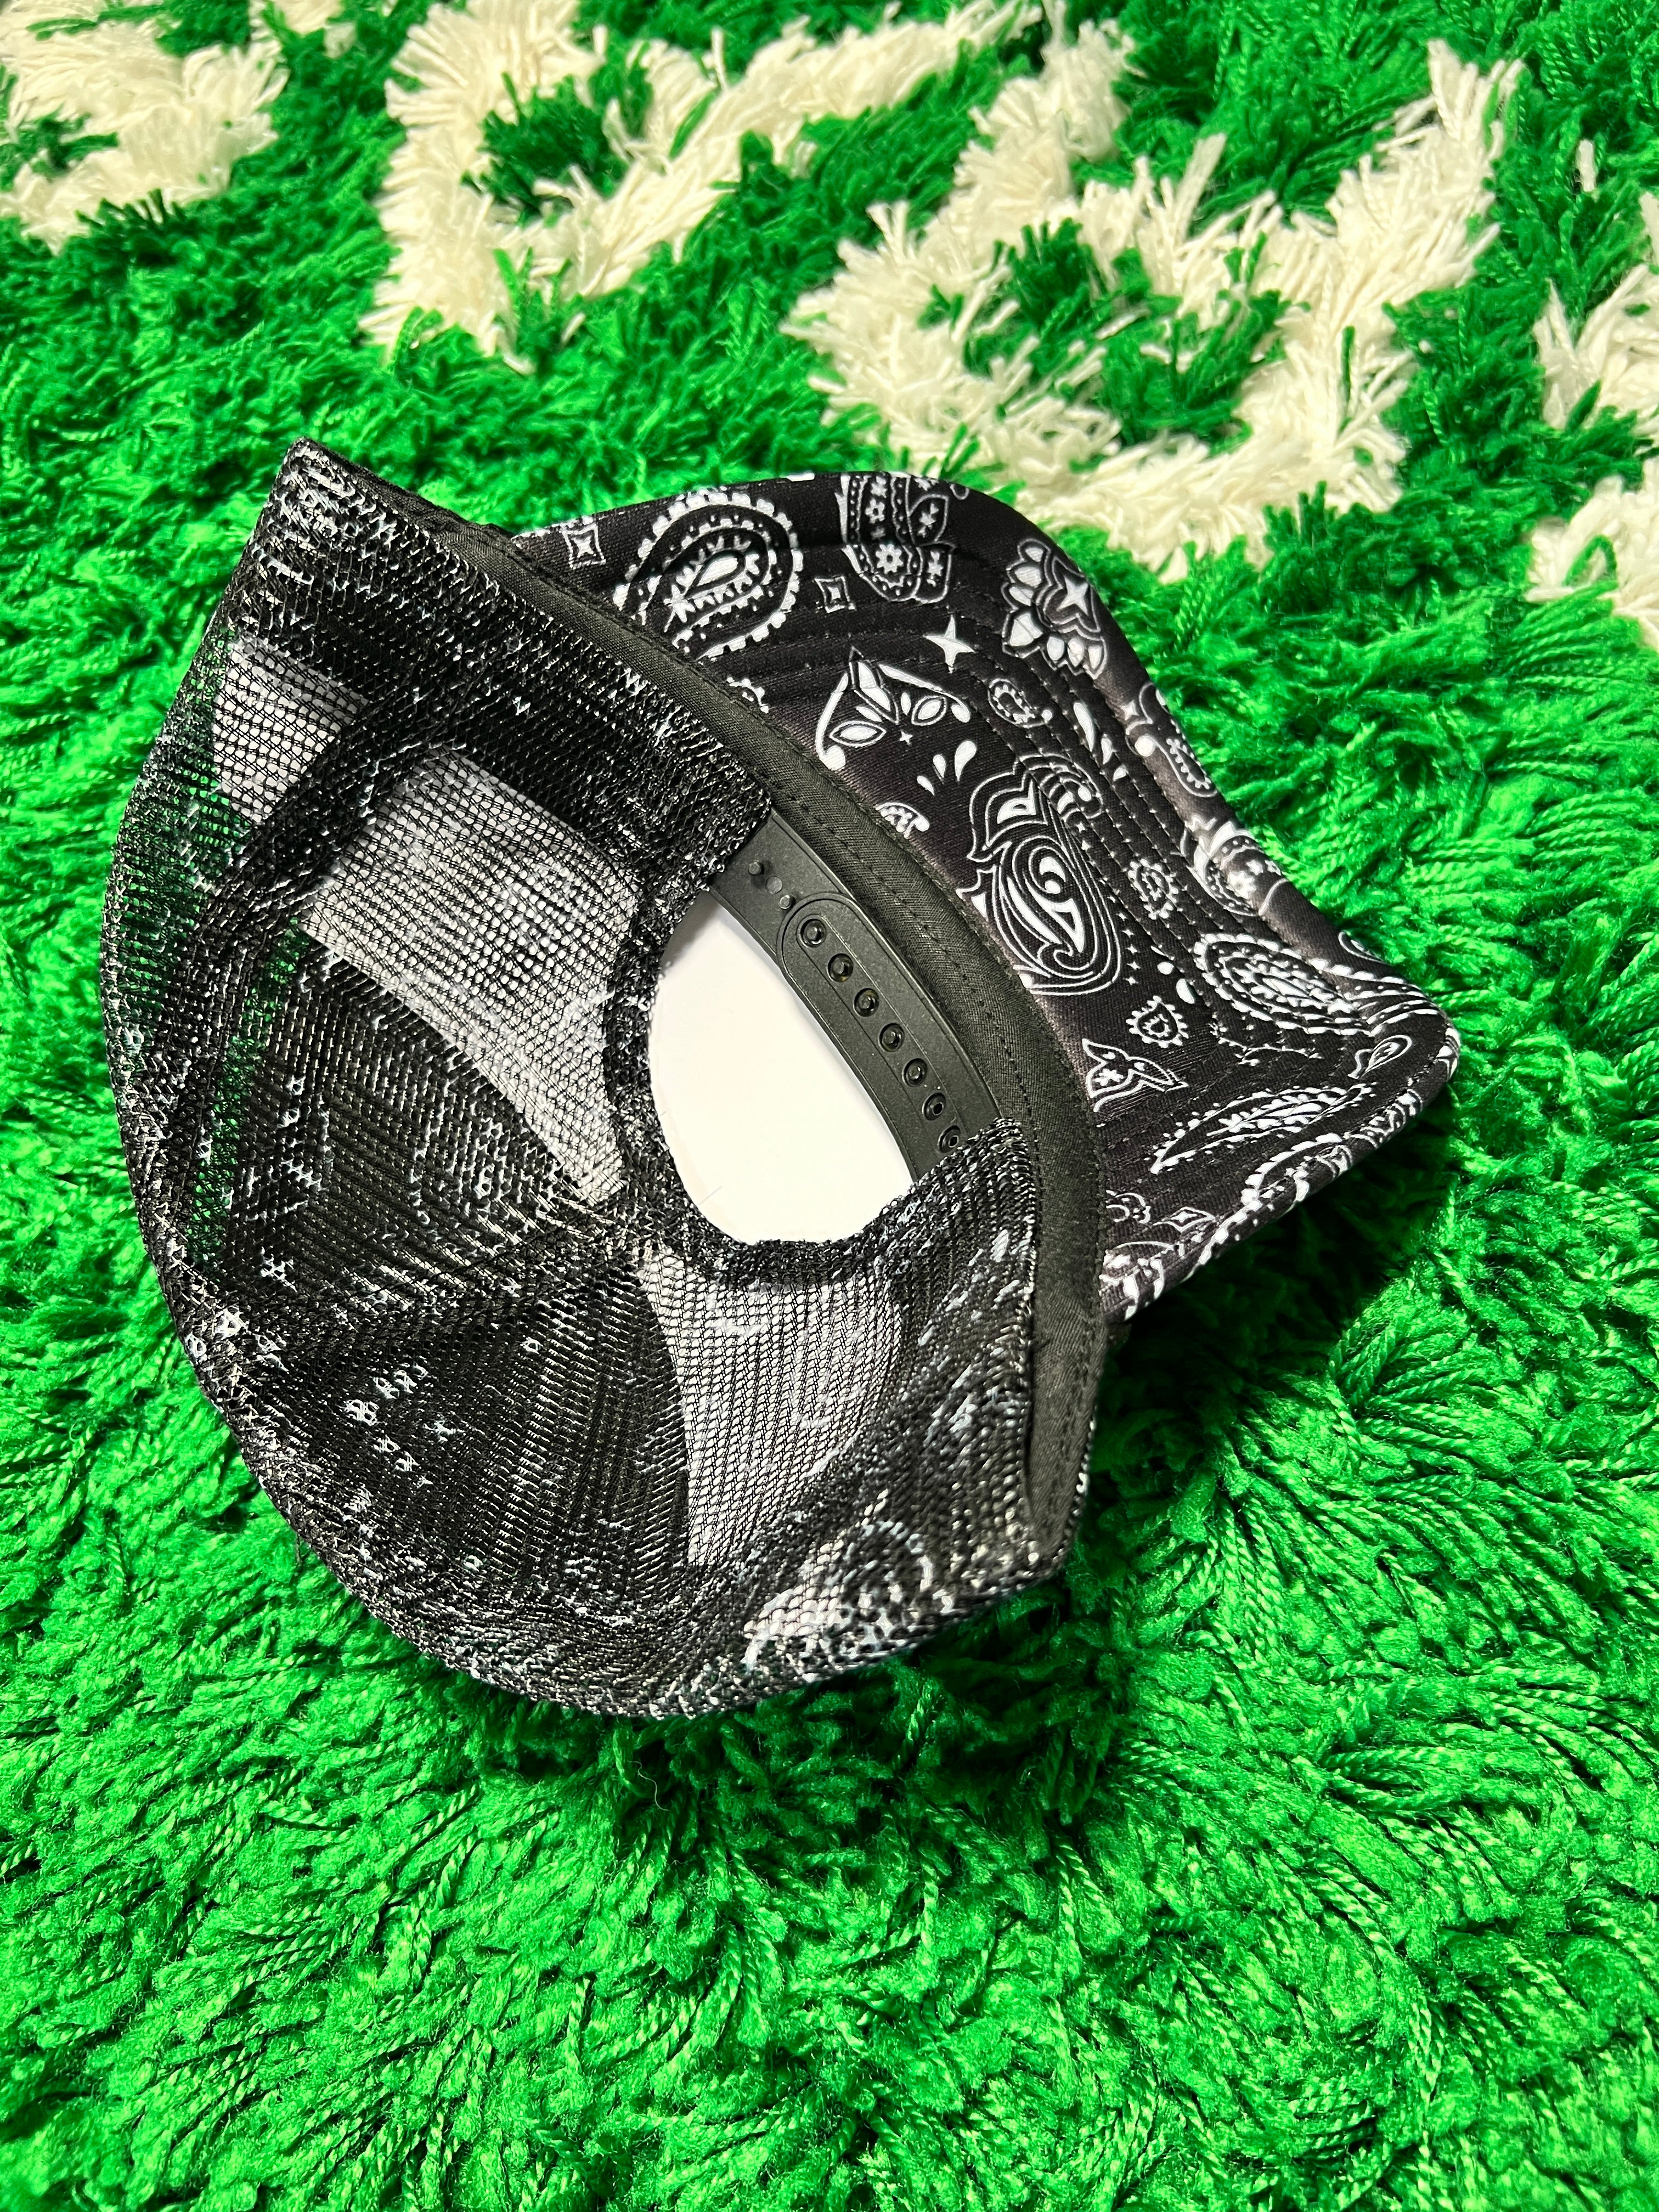 Black Velvet Trucker Hats – Embroidery Plug